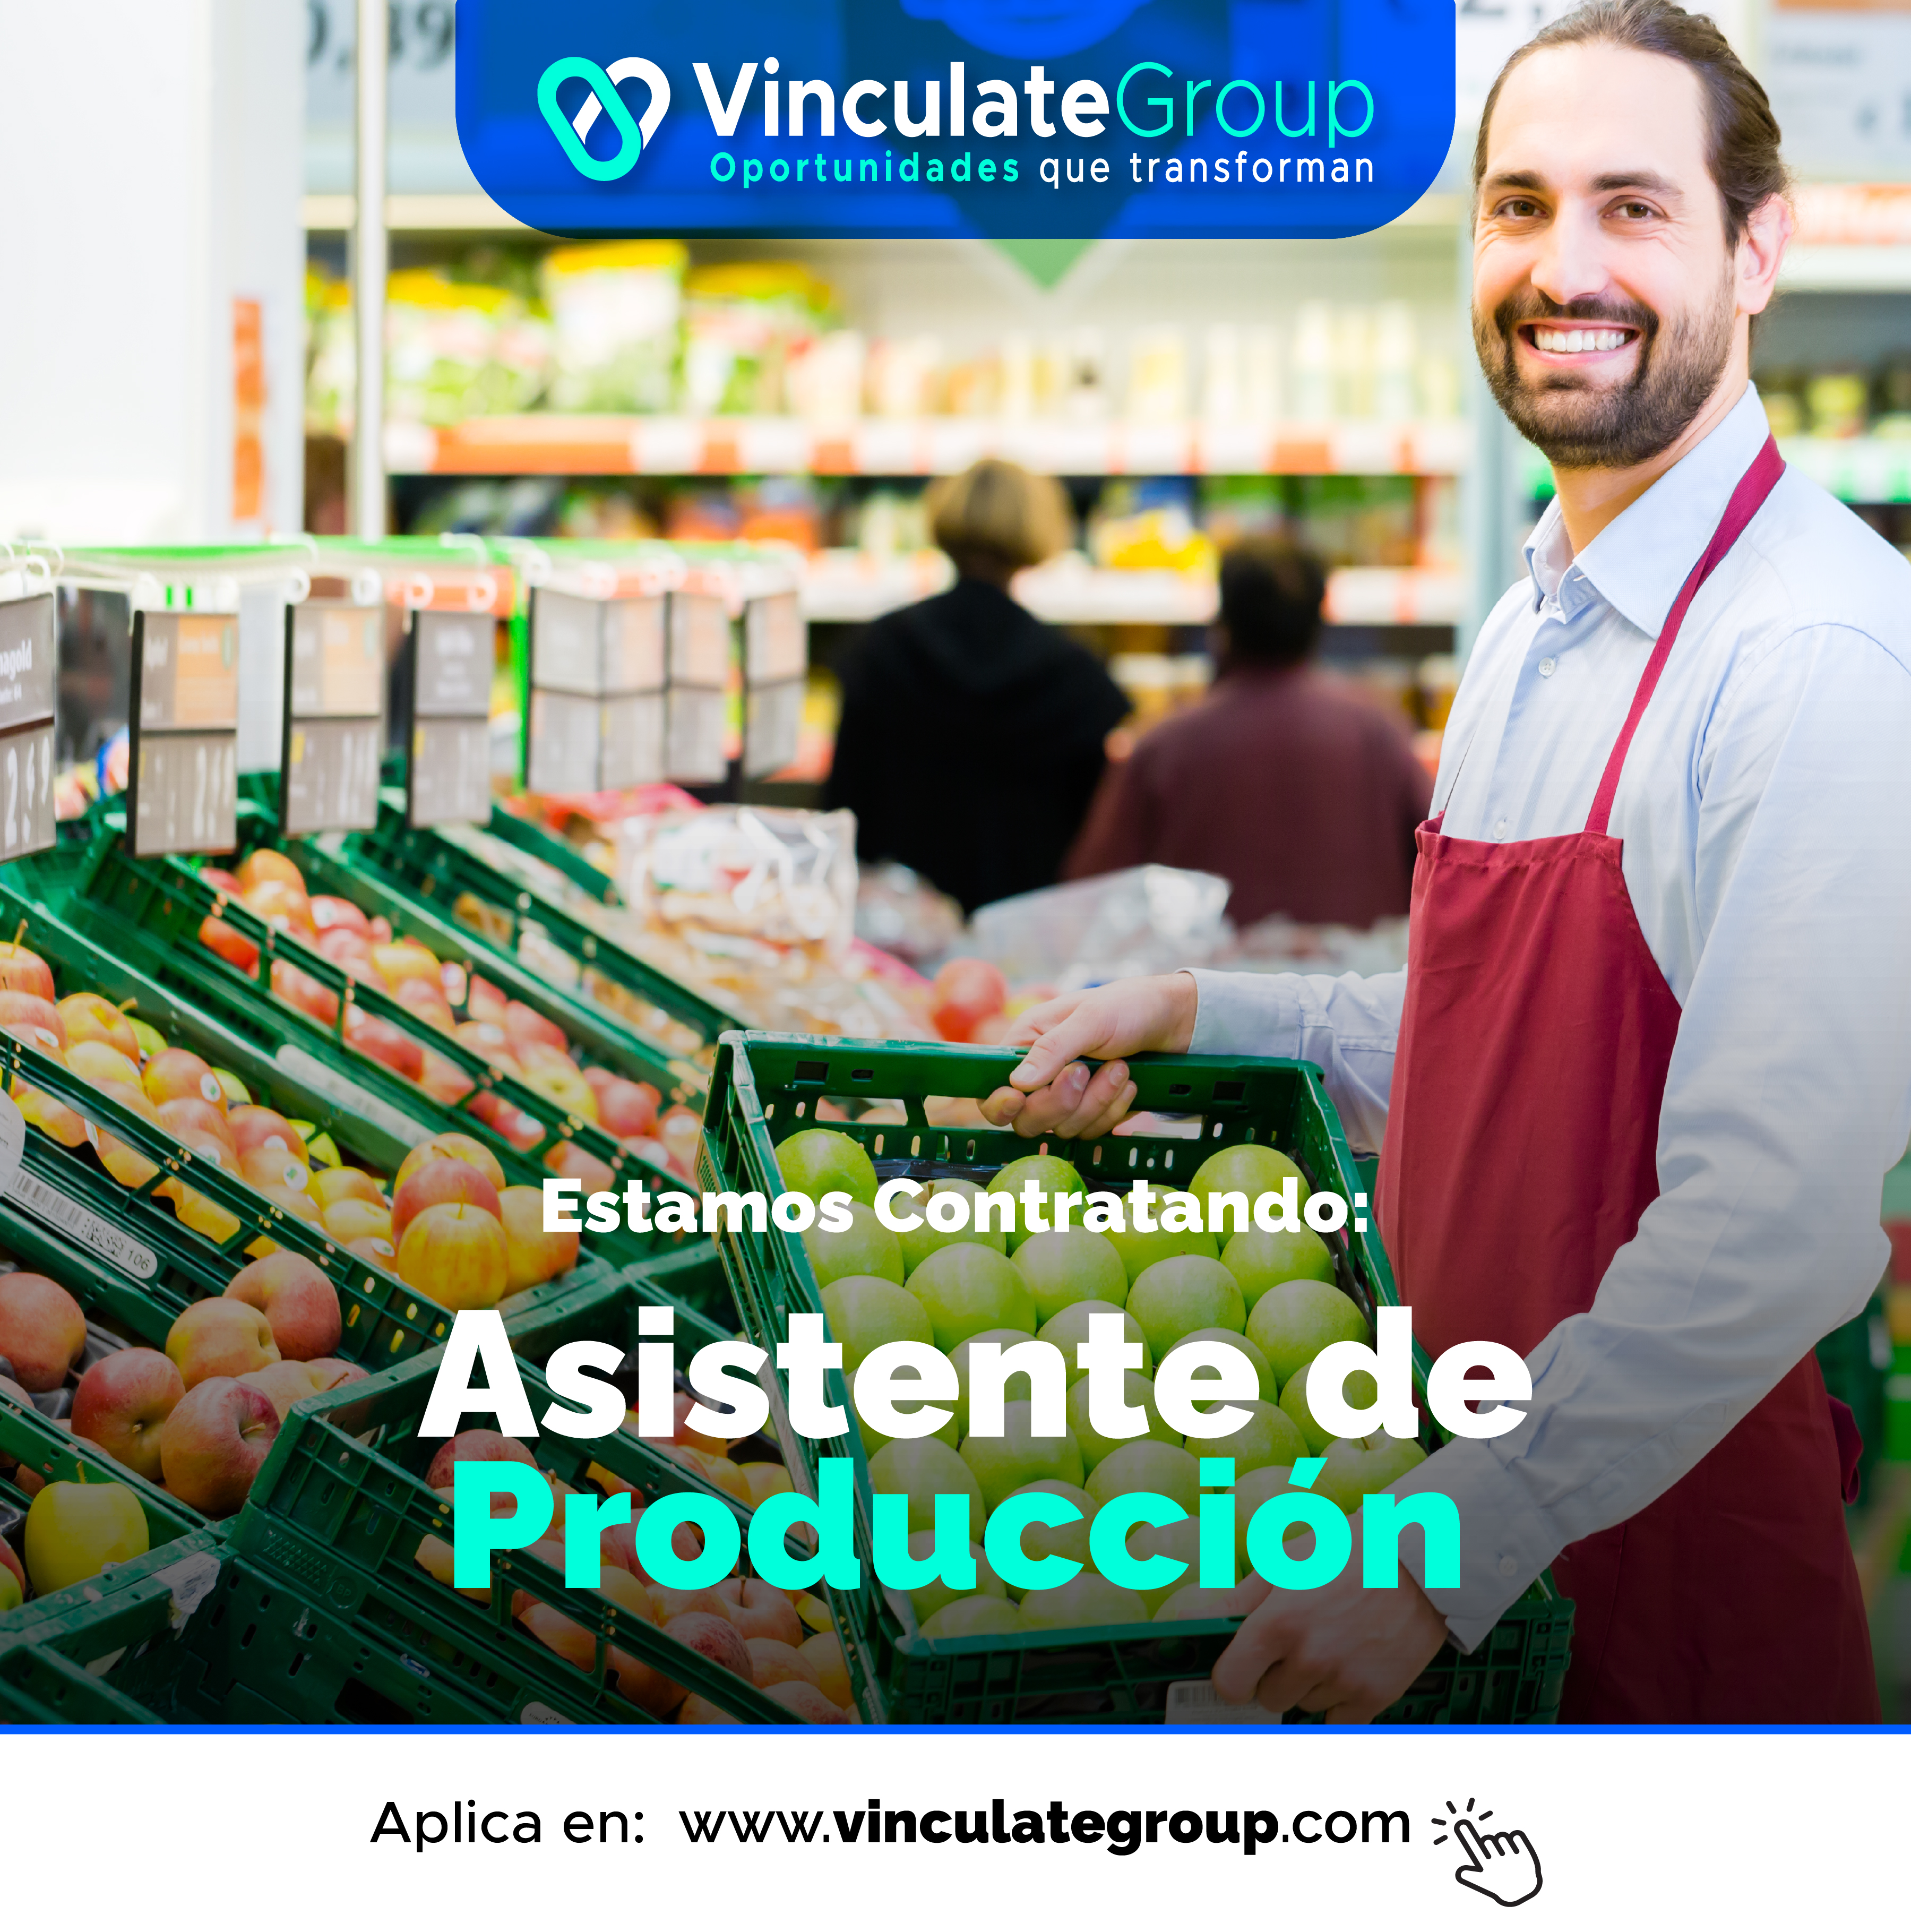 \%Y VinculateGroup

Oportunidades que transforman

     

py Ee YW
Produccion

Aplica en: www.vinculategroup.com “Fy